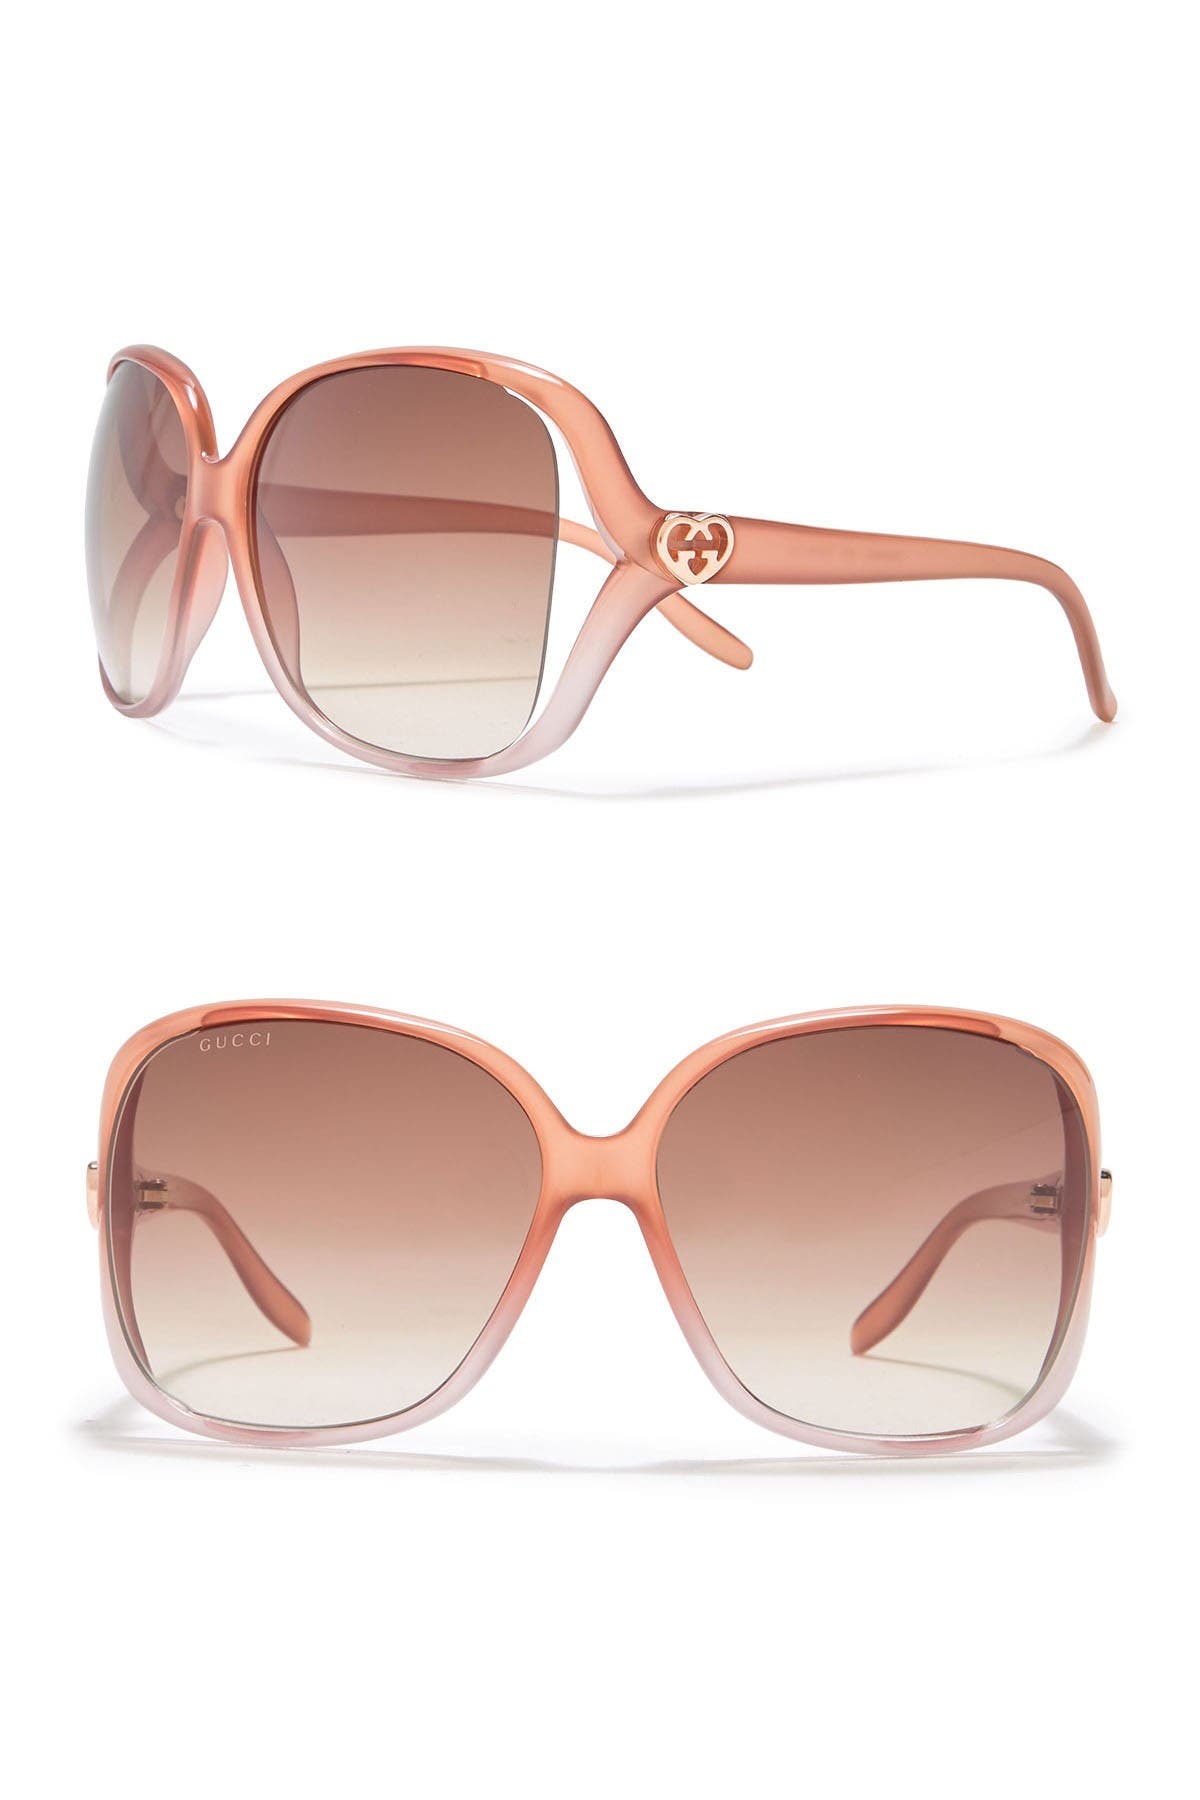 Gucci 60mm Oversized Square Sunglasses In Pesca Rosa Brown